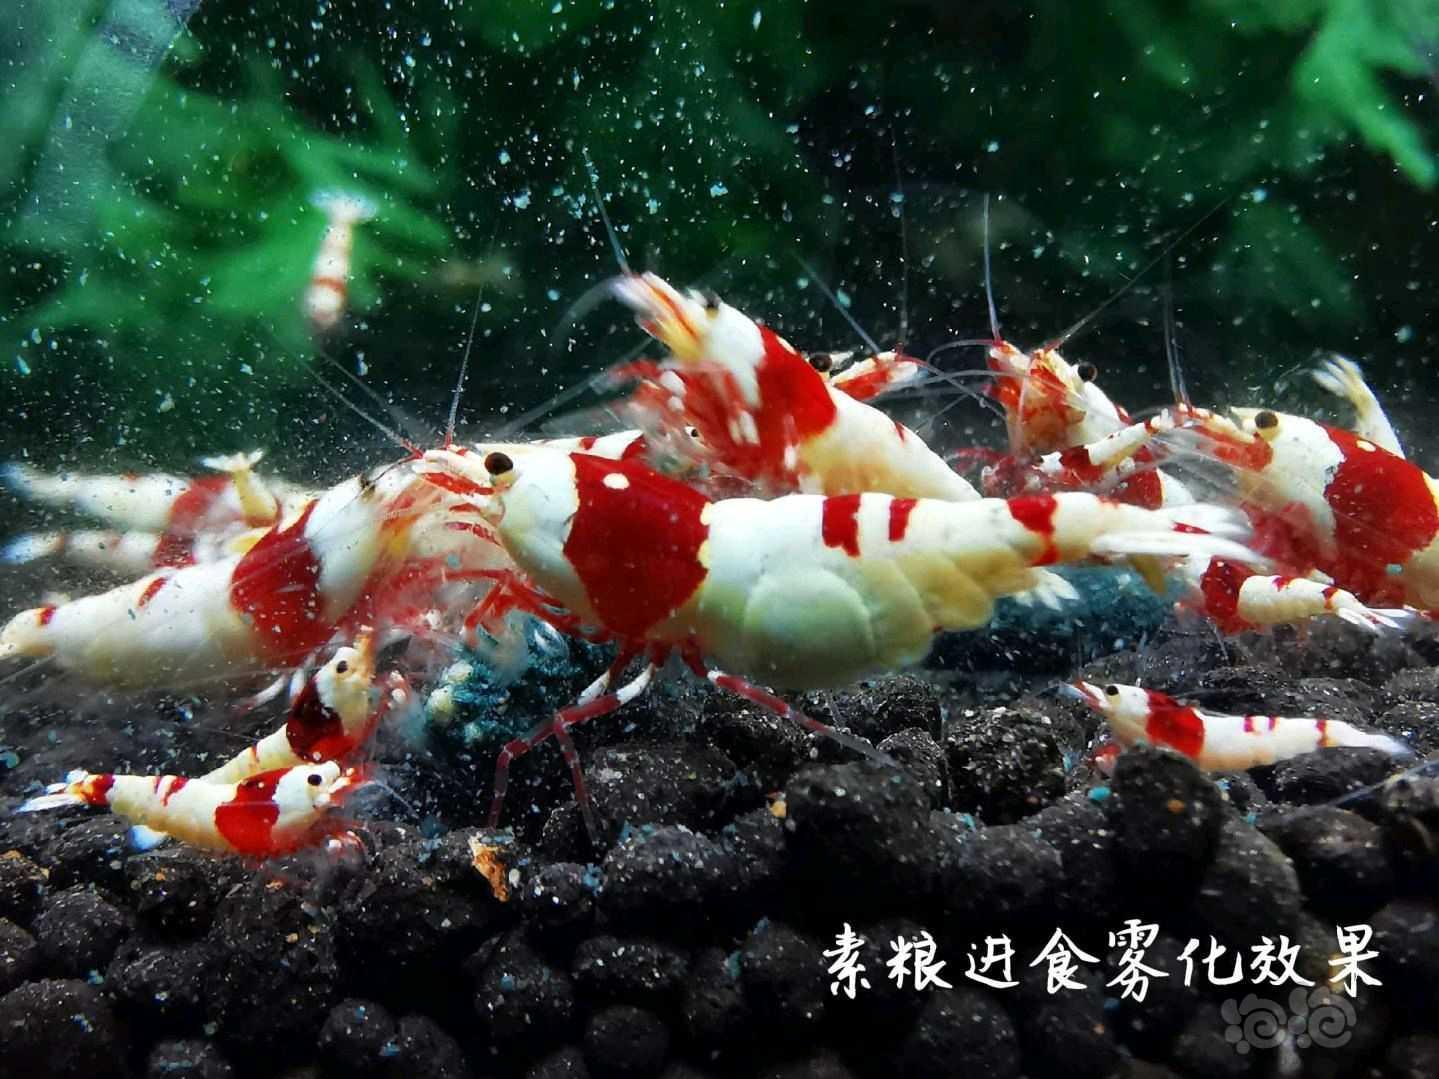 【用品】2021-08-30#RMB拍卖瑾福水晶虾饲料一套-图6